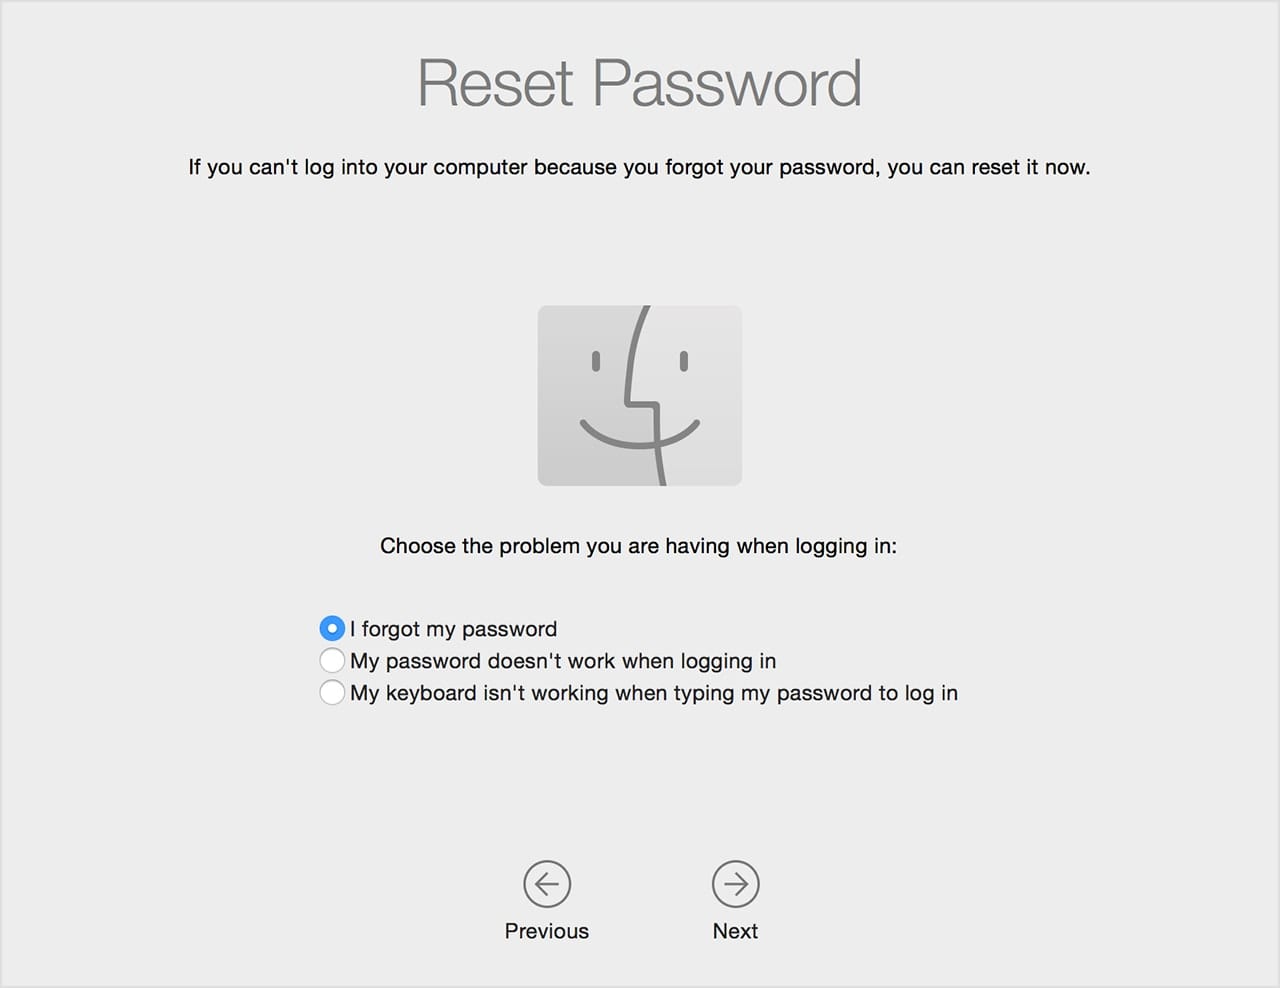 Reset Password screen in macOS